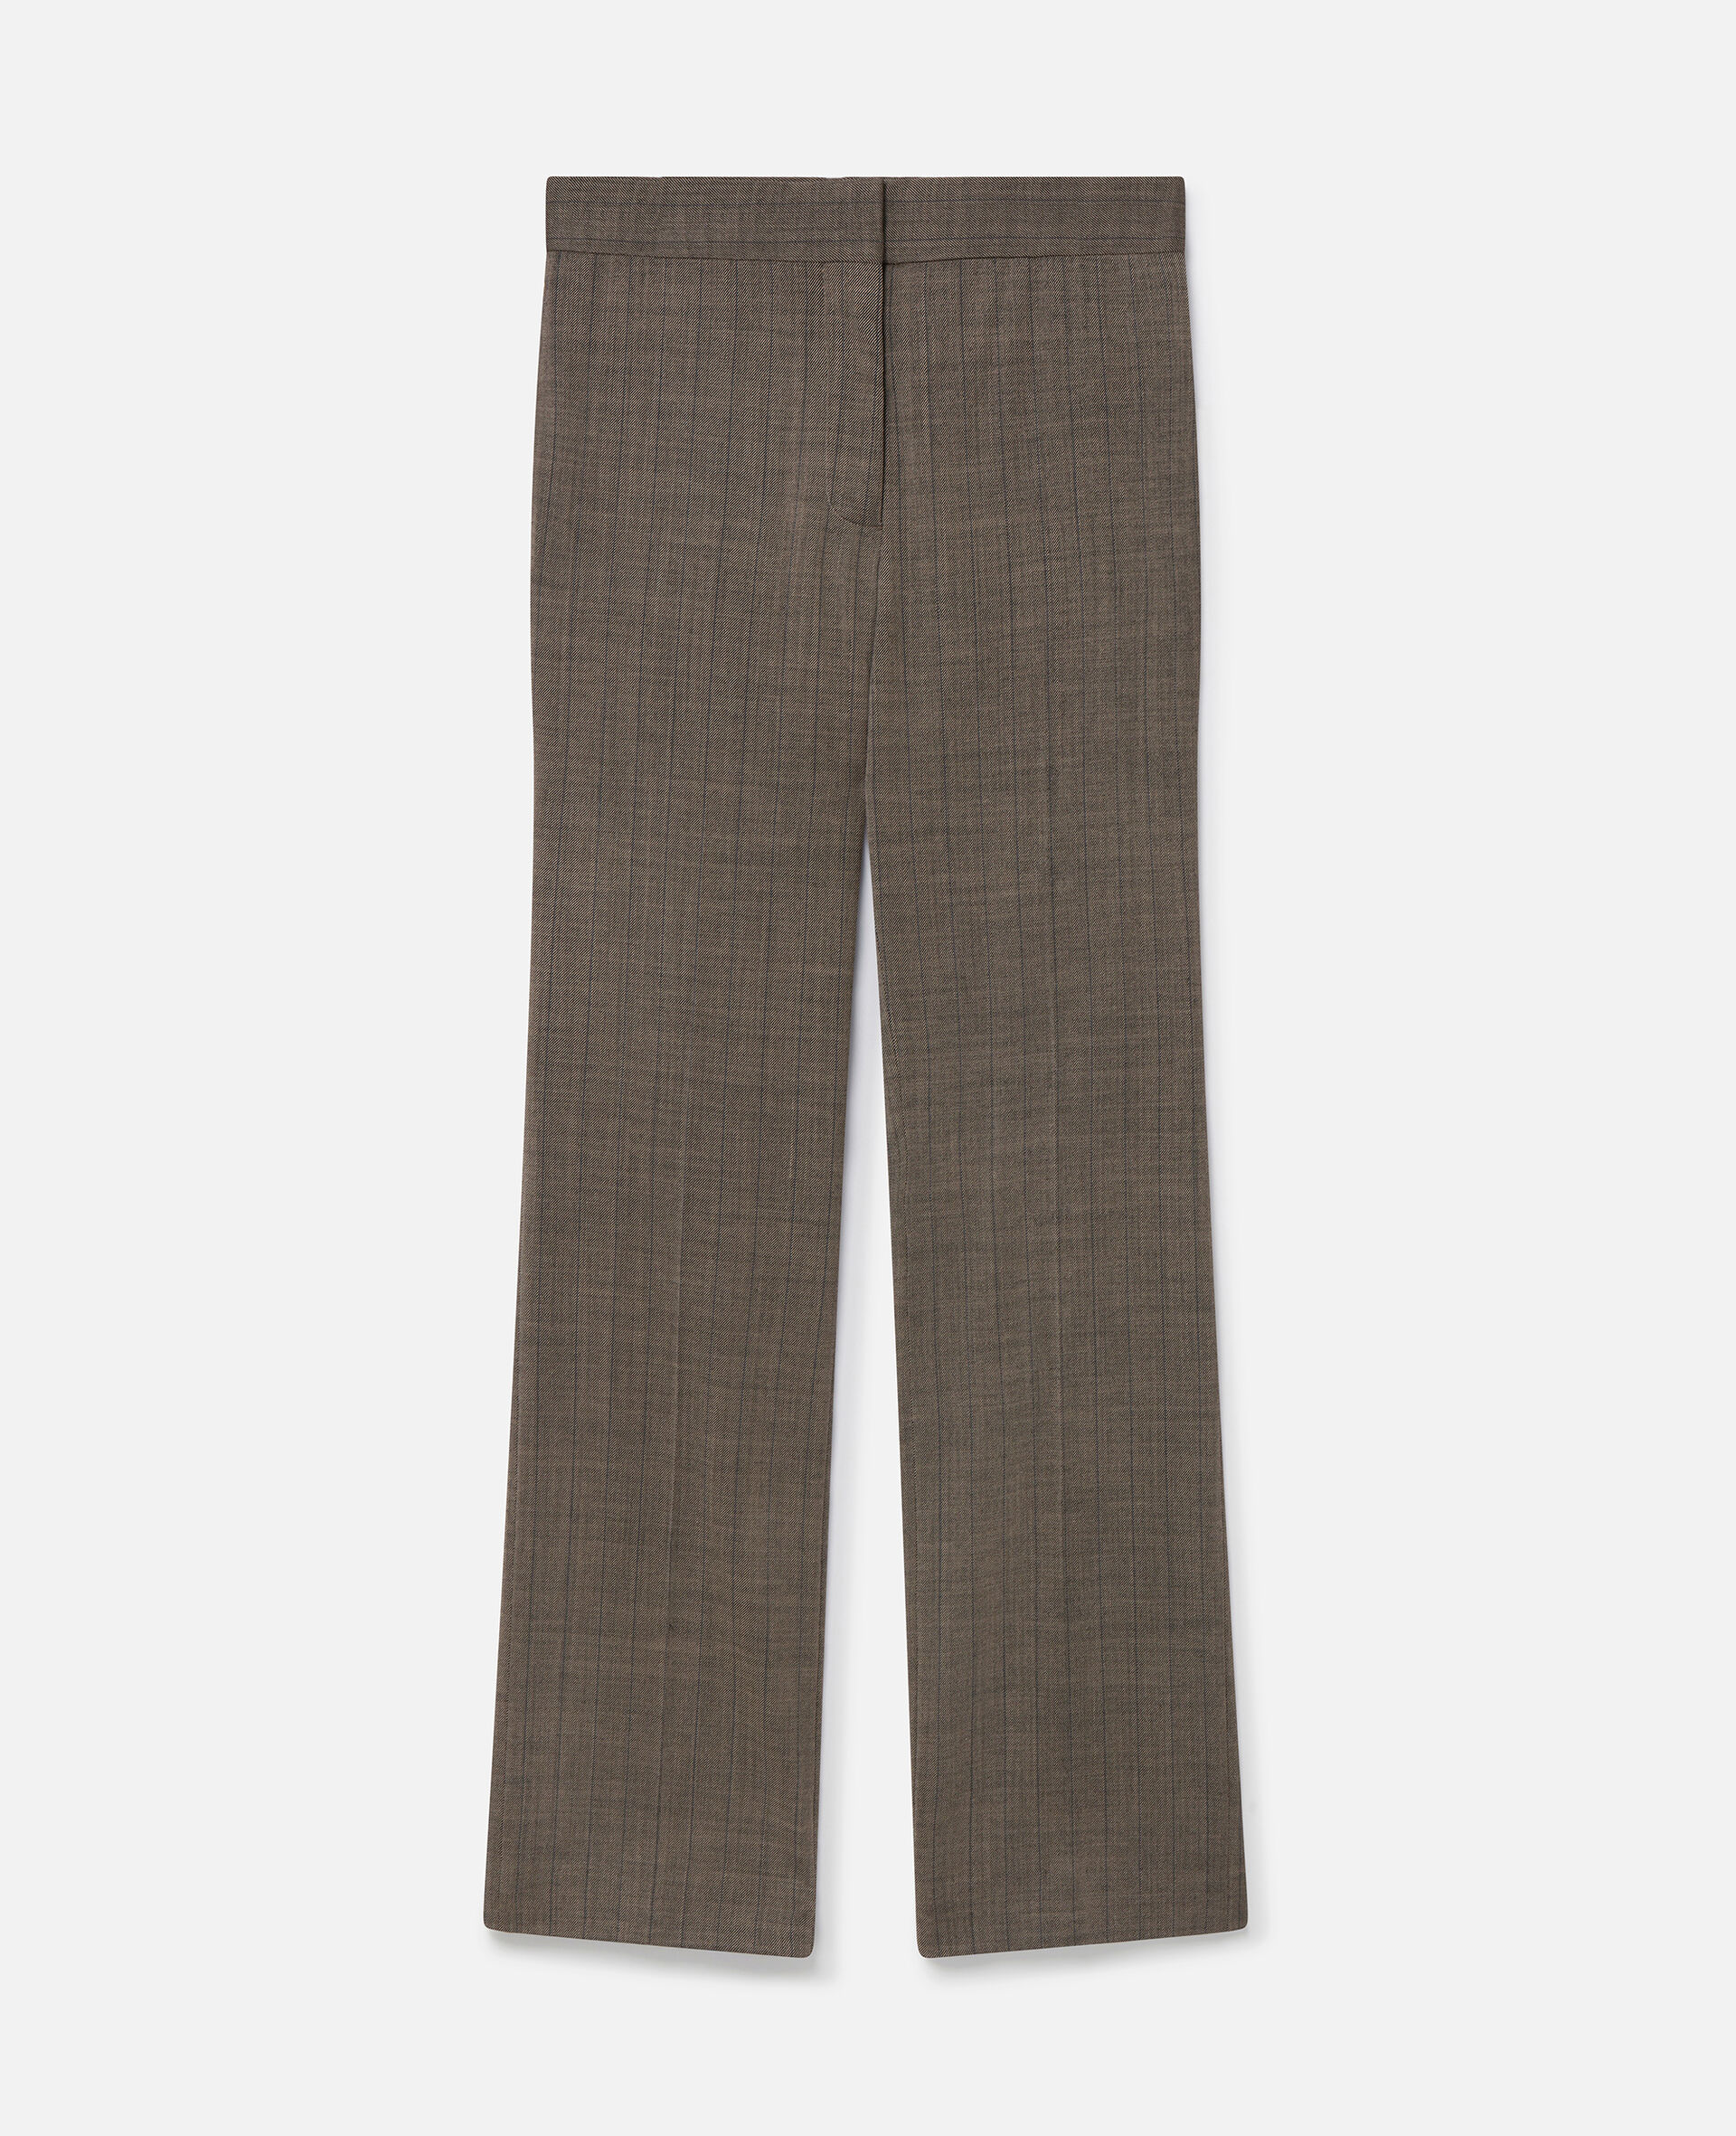 Hose mit geradem Bein aus Wolltwill mit Nadelstreifen-Grau-large image number 0